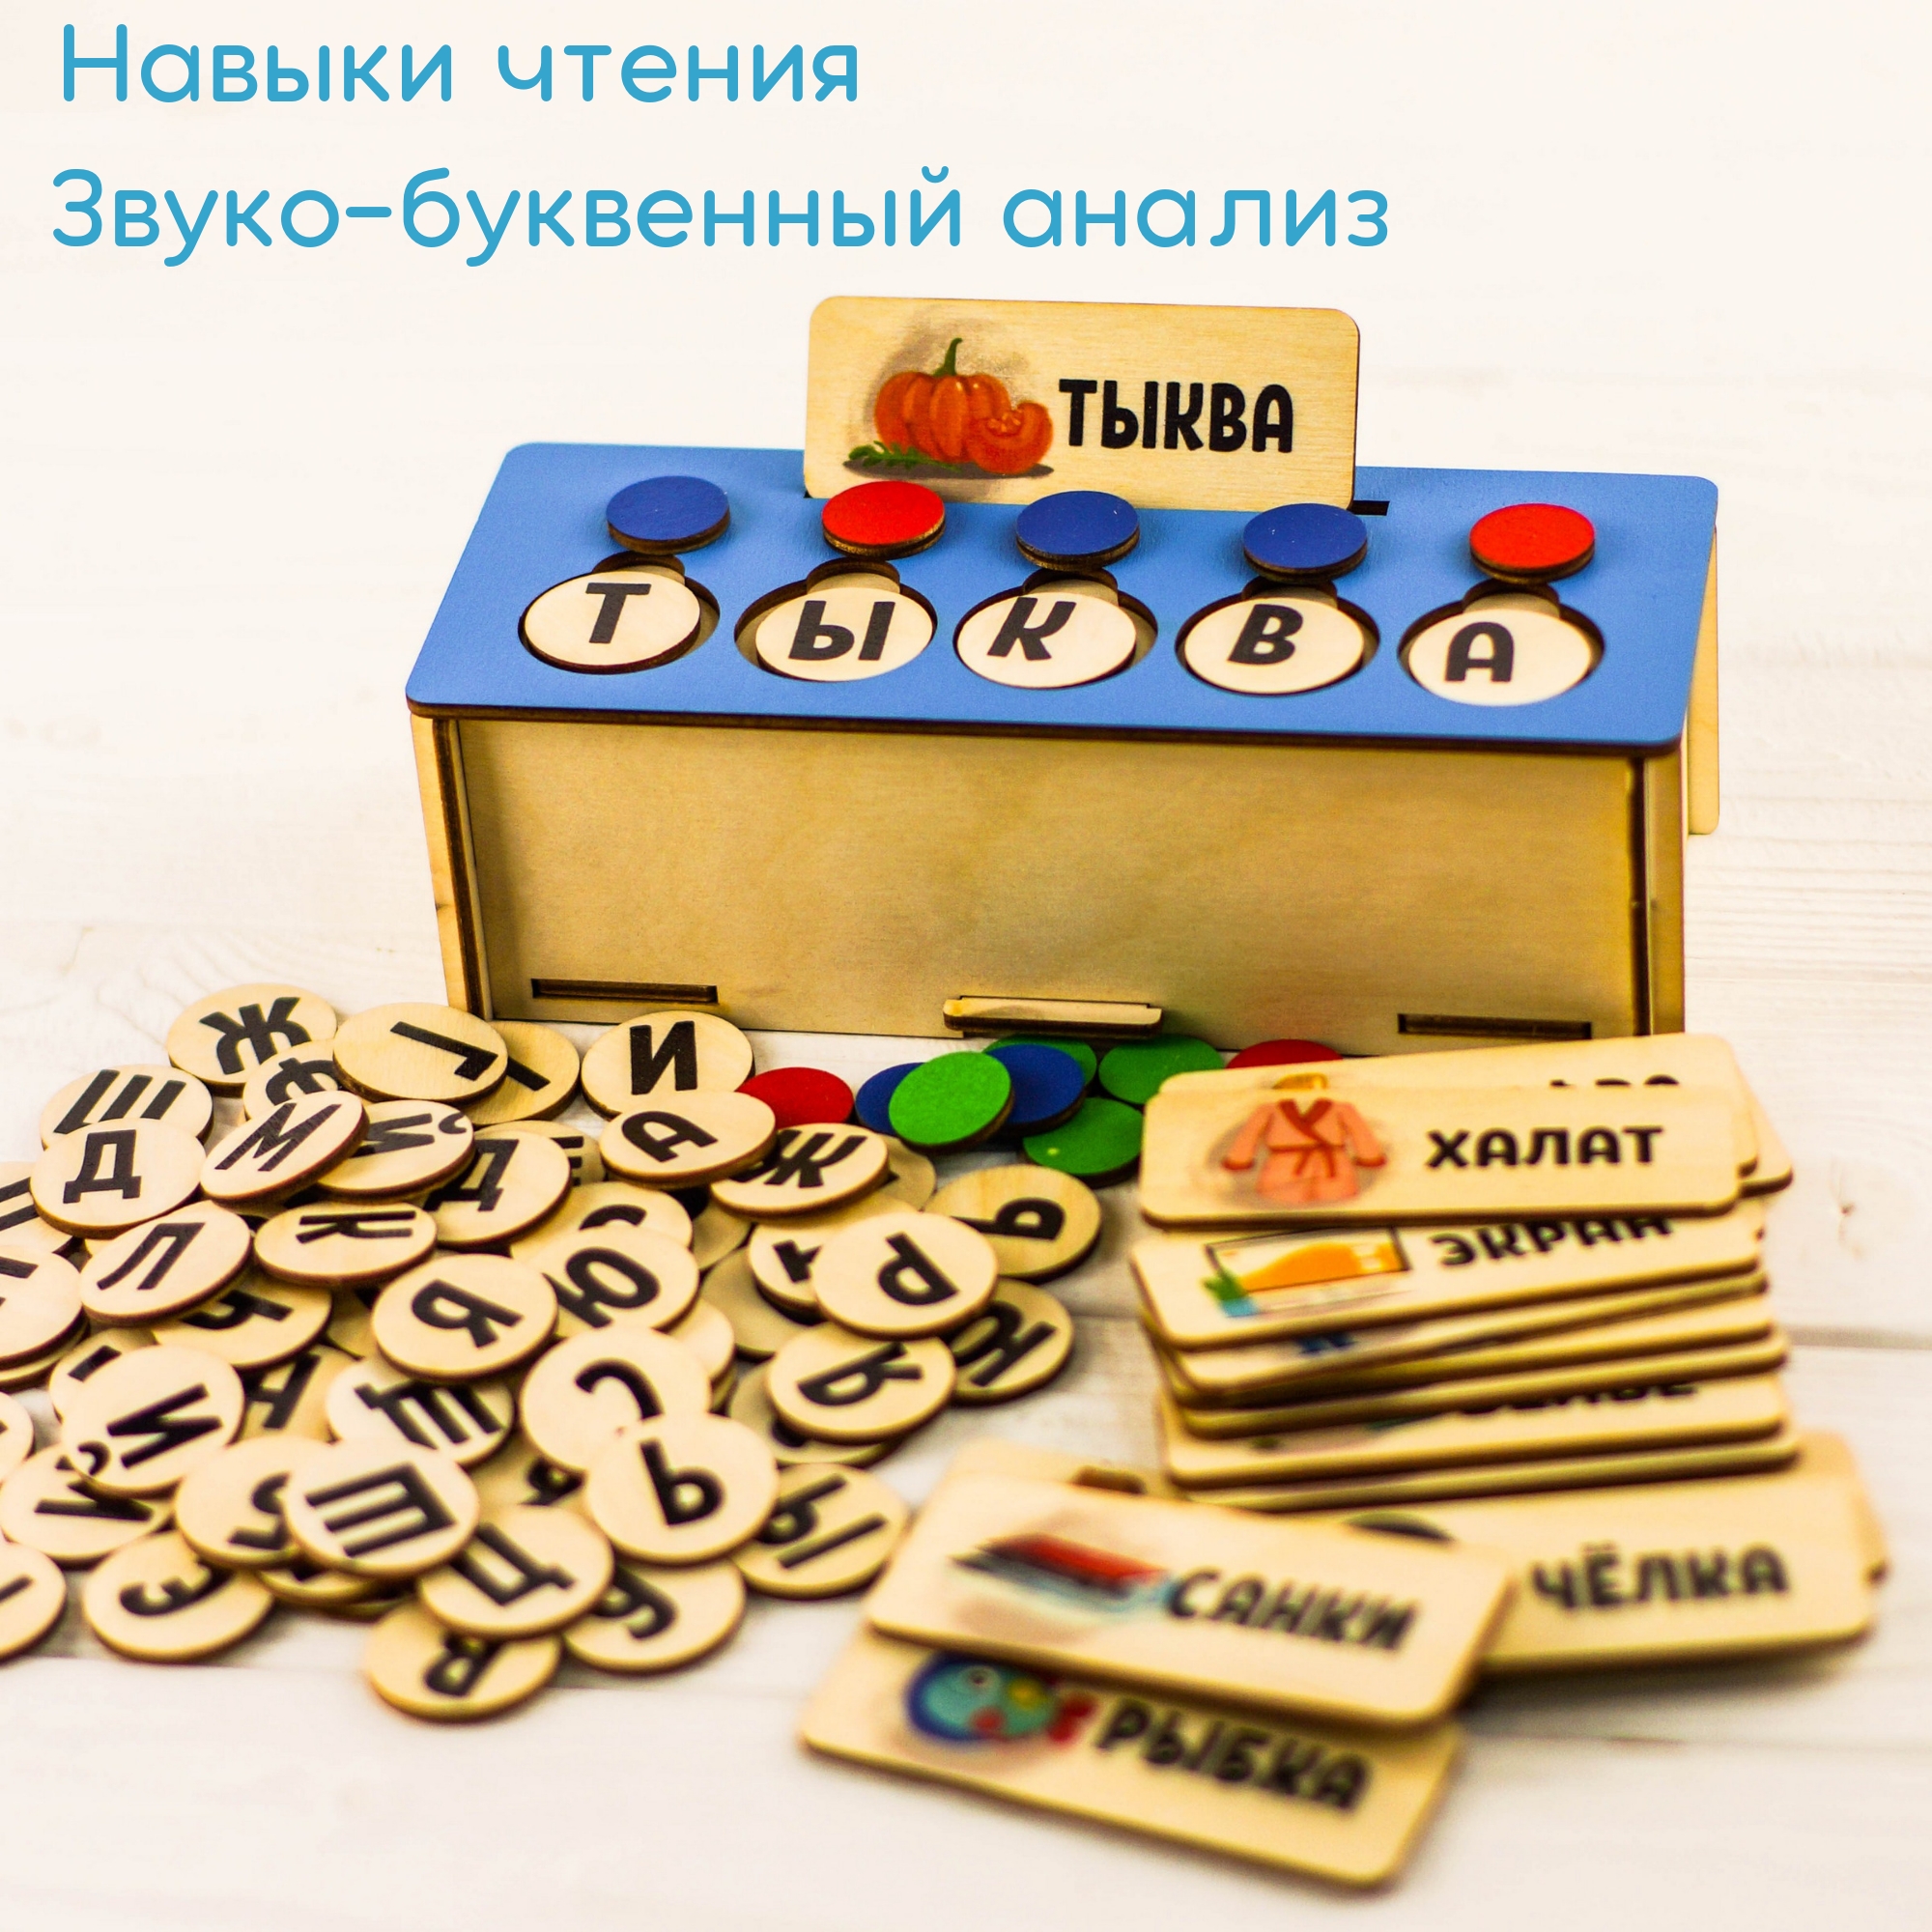 Развивающая игрушка SOVA TOYS S009 Буквы и слова - фото 2